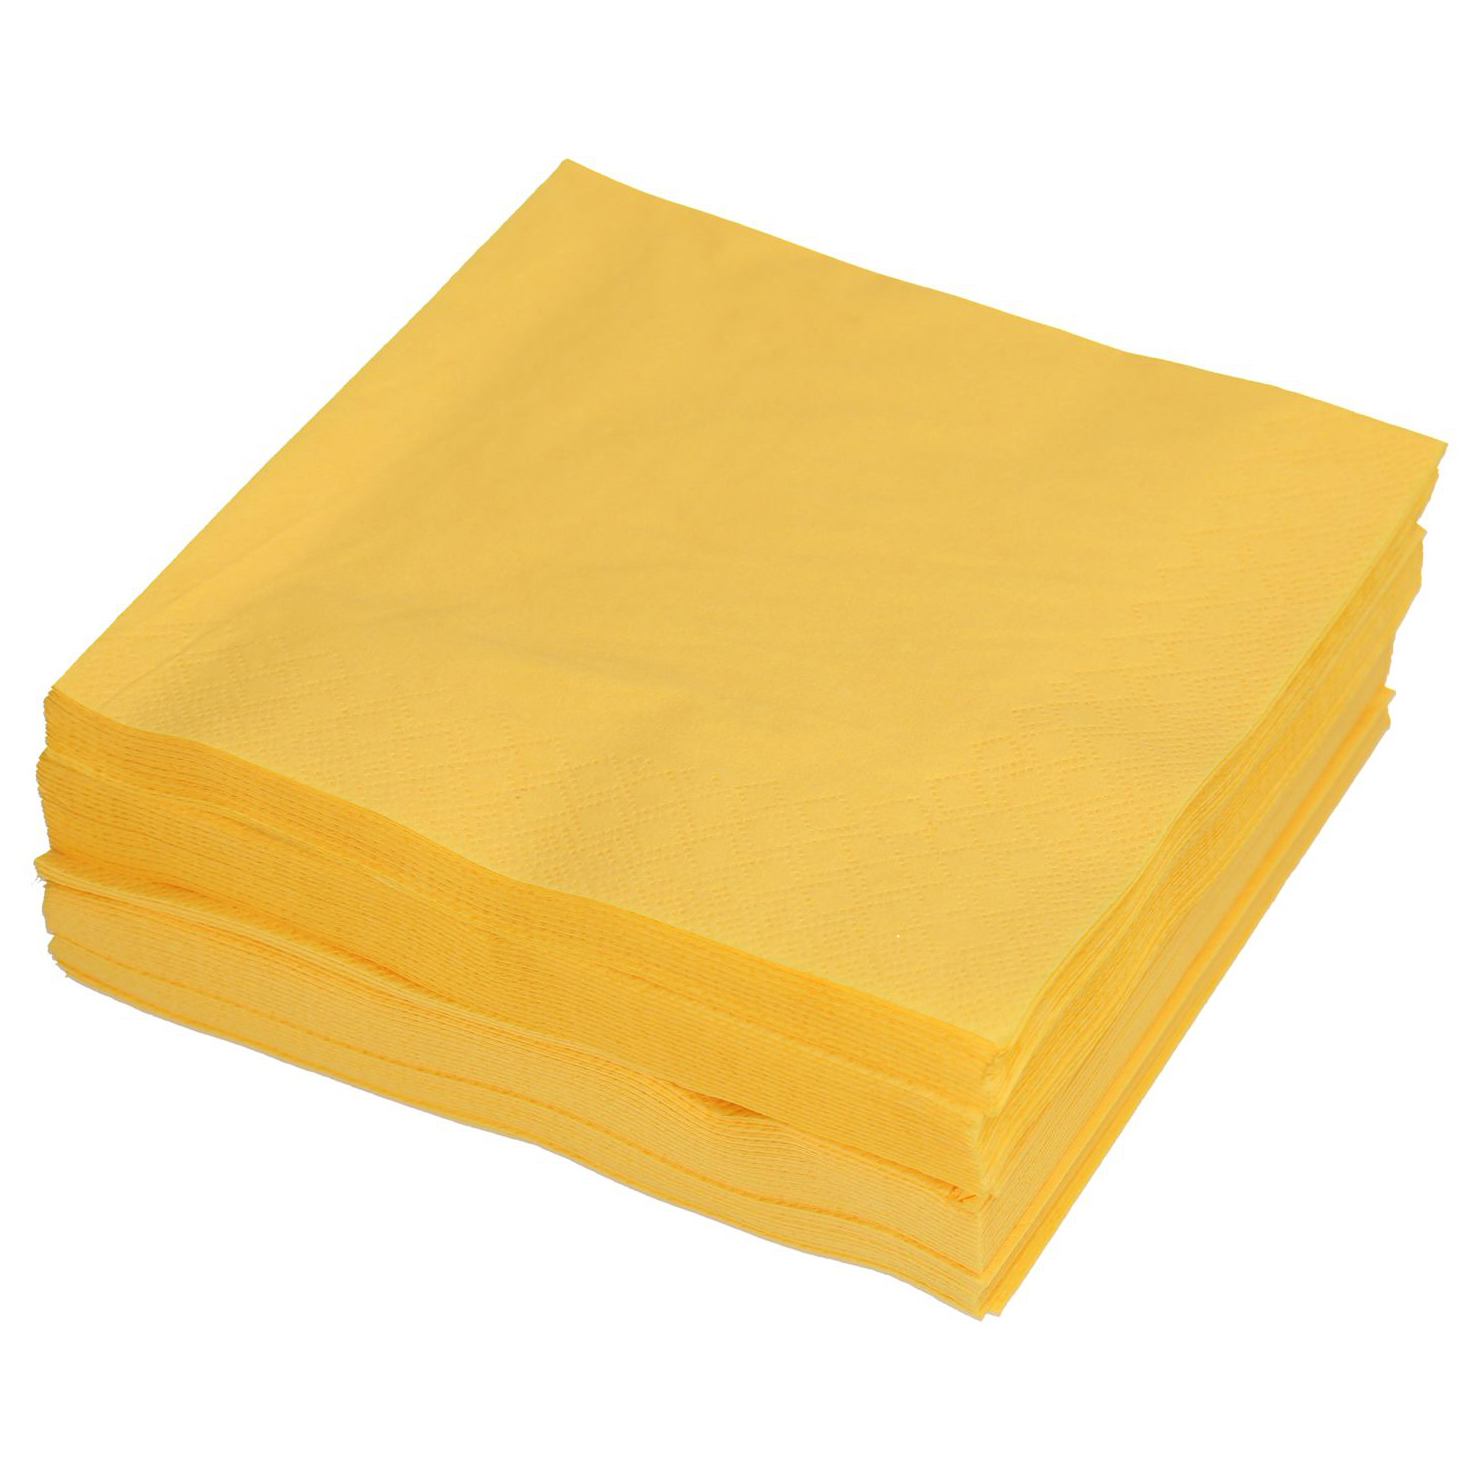 PAPSTAR Serviettes PAP86975 3 couches, jaune, 50 pcs 3 couches, jaune, 50 pcs